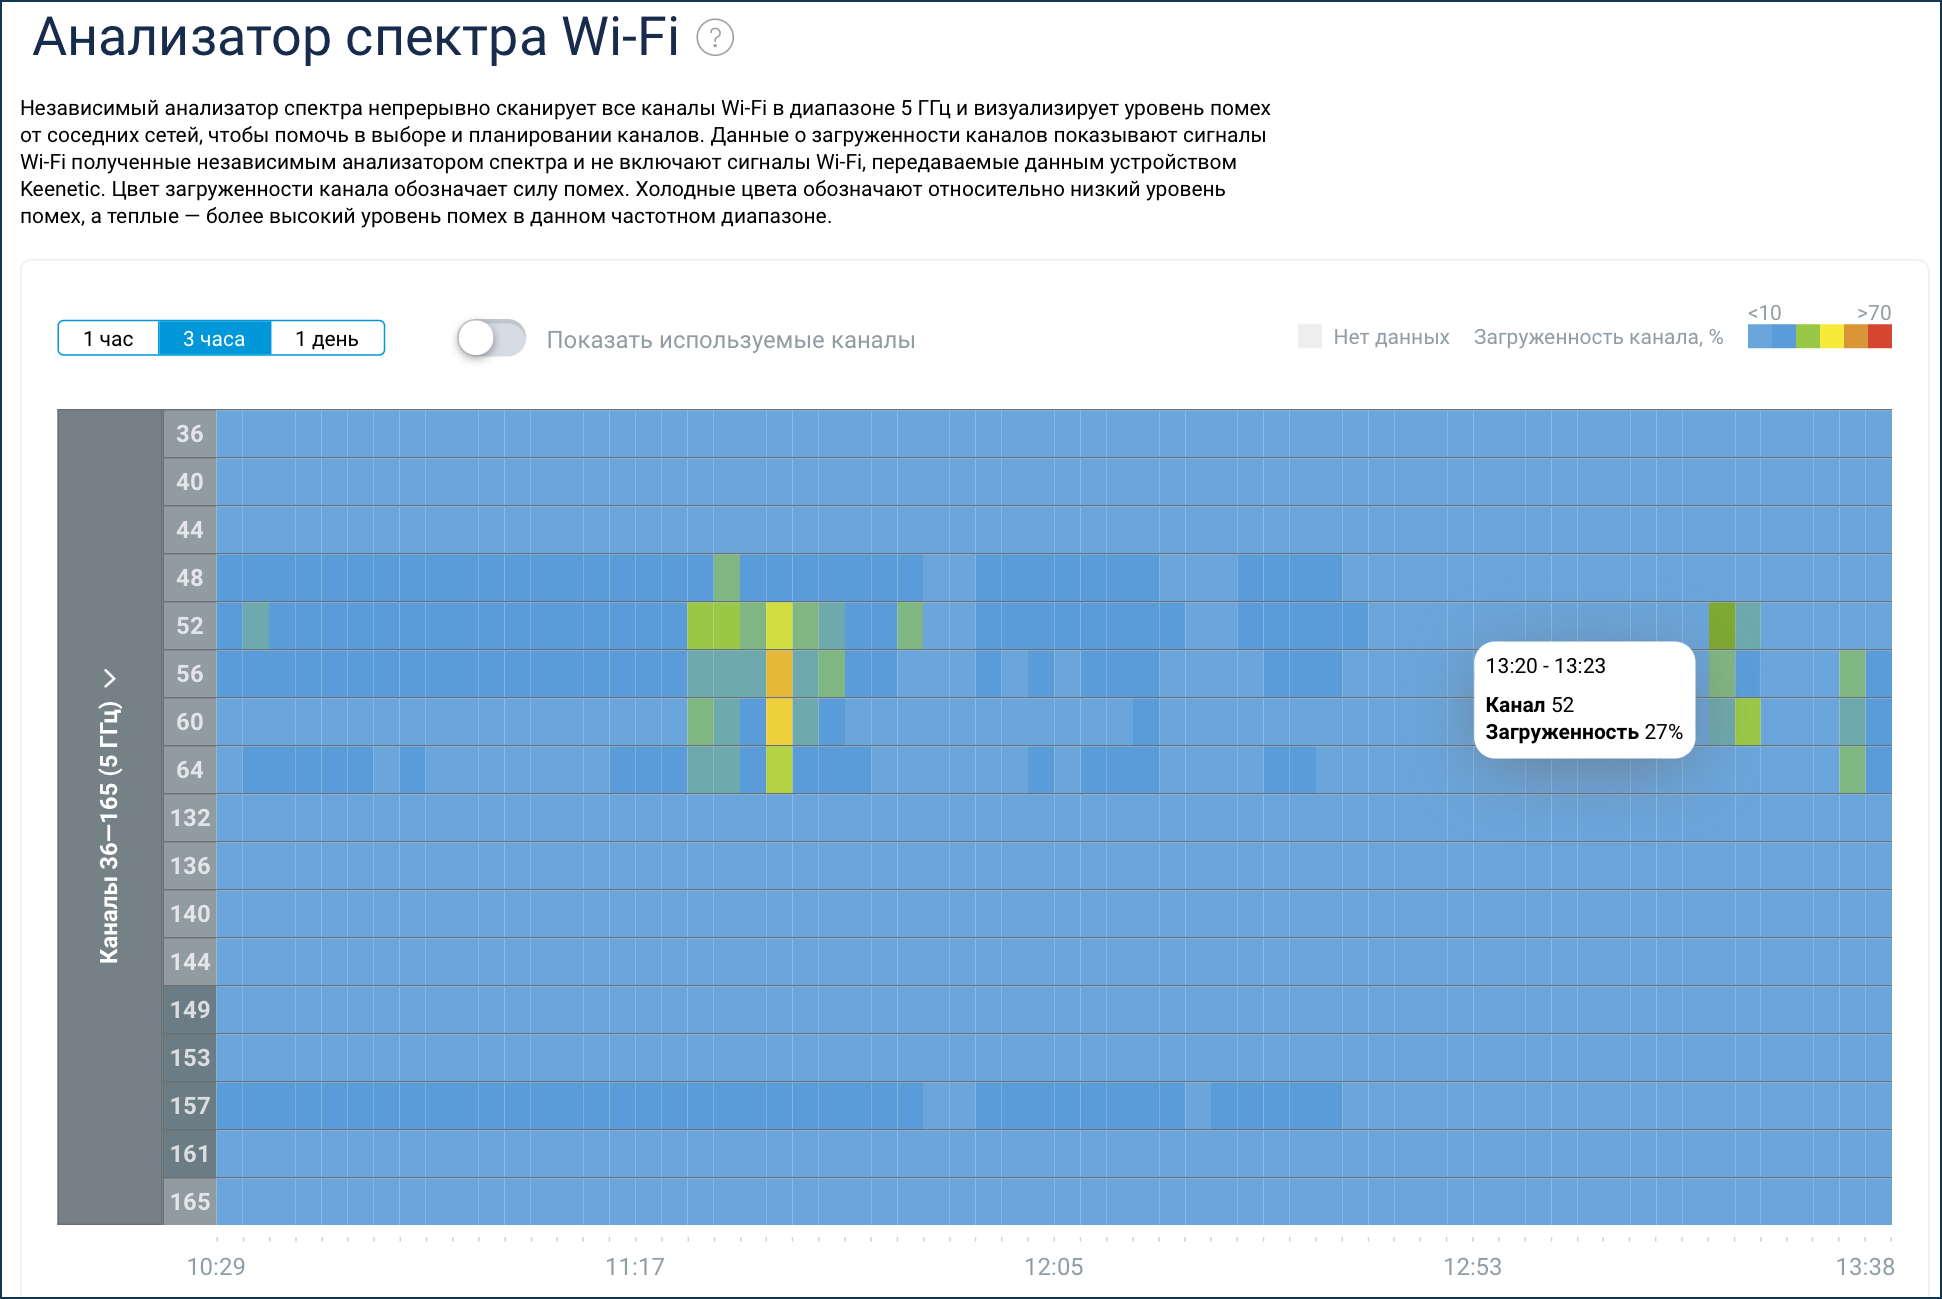 wifi-spectrum-analyser-01-en.png